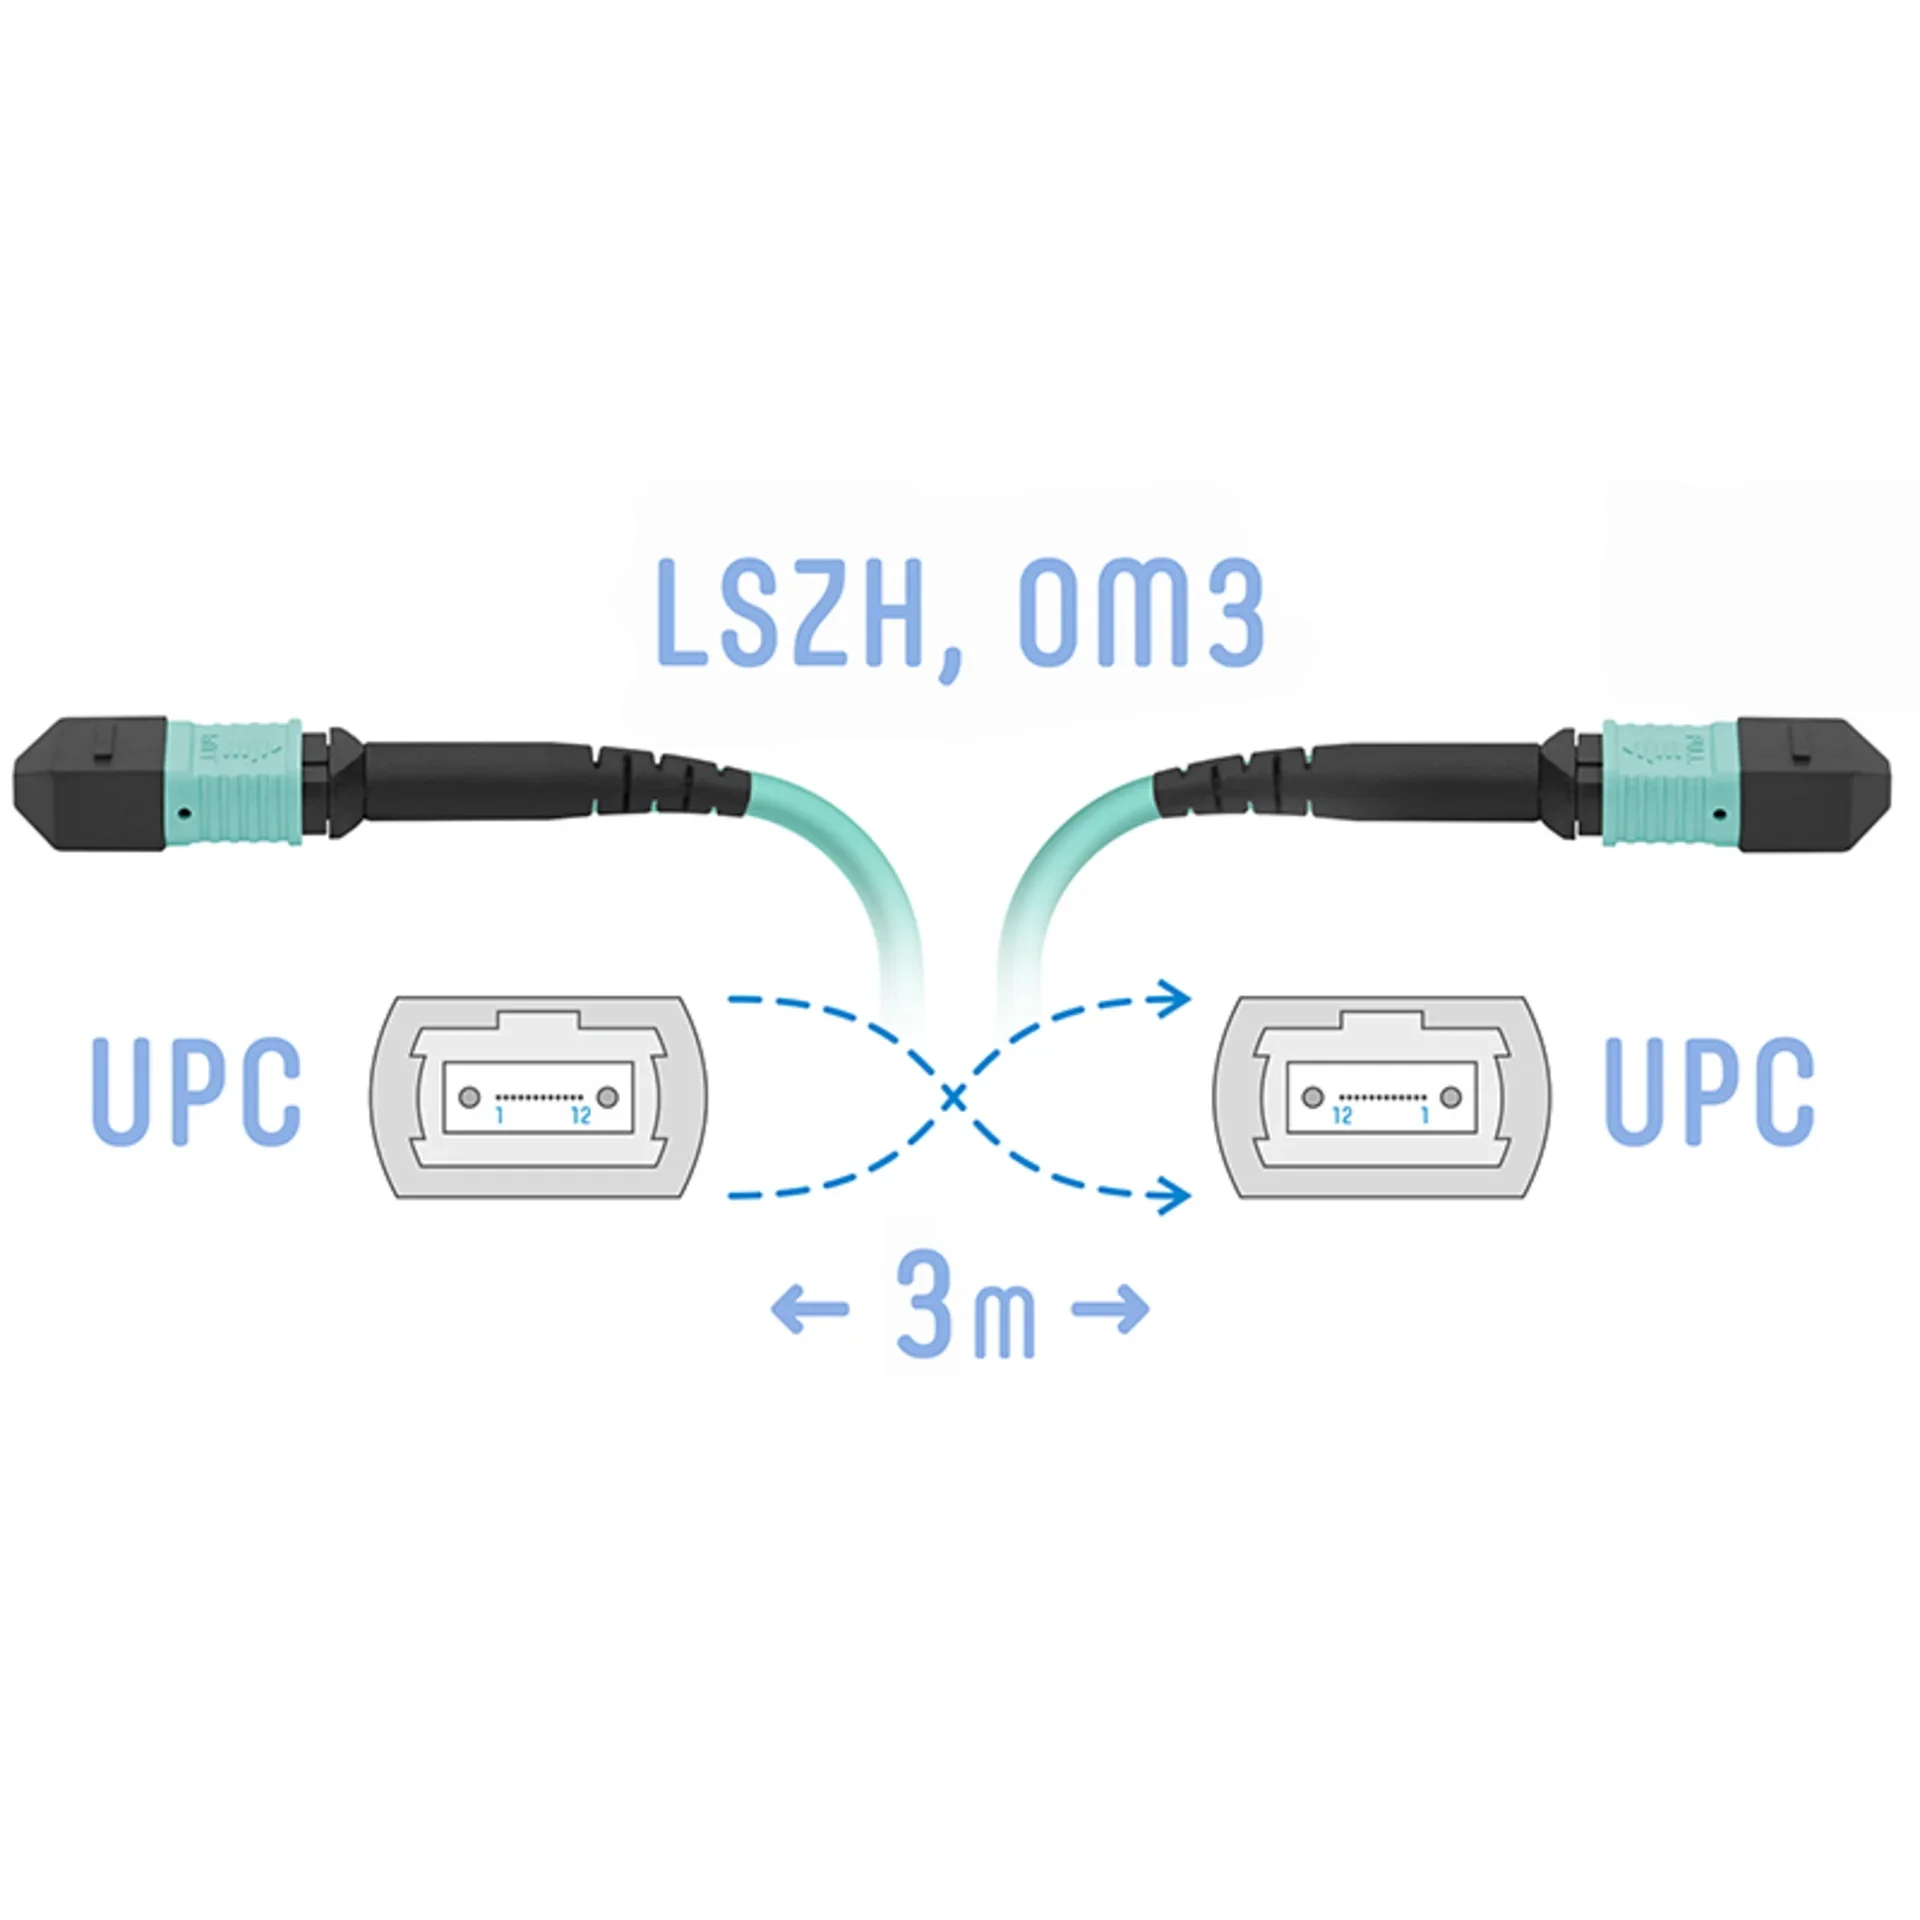 SNR-PC-MPO/UPC-MPO/UPC-FF-MM-8F-3m - Оптический патчкорд MPO/UPC - MPO/UPС, FF (Female / Female), кроссовый, MM, 8 волокон диаметром 50/125 (OM3) 3 метра купить в Казани 	Оптический разъем MPO (Multi-fiber push-on) является разумной альтернативой для кабельной инфрастру